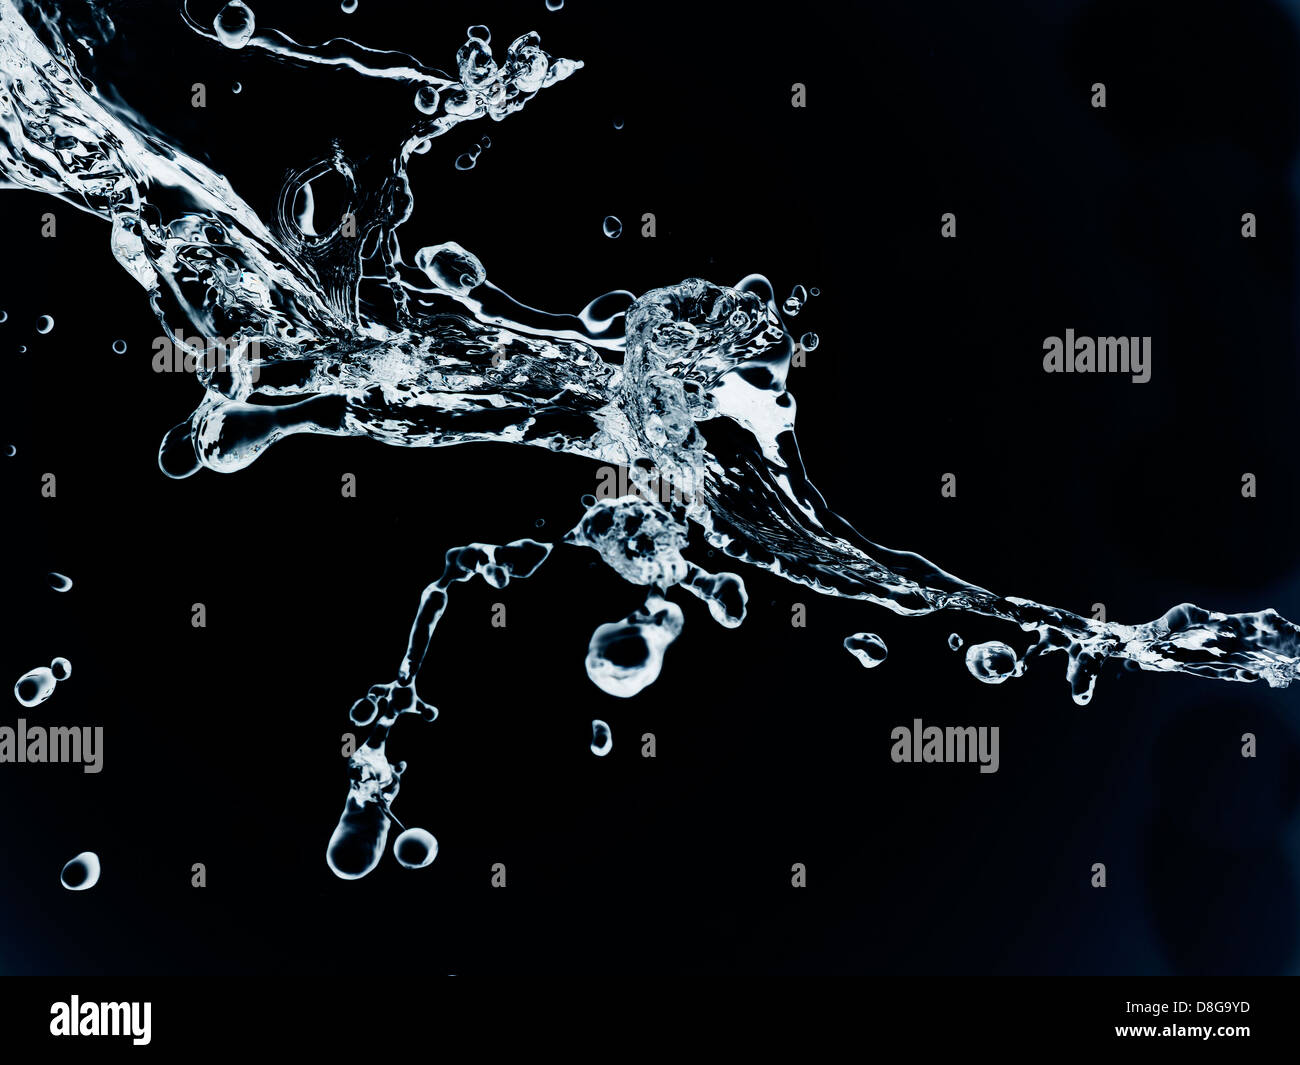 Wasser in Bewegung. High-Speed-Aufnahme. Stockfoto